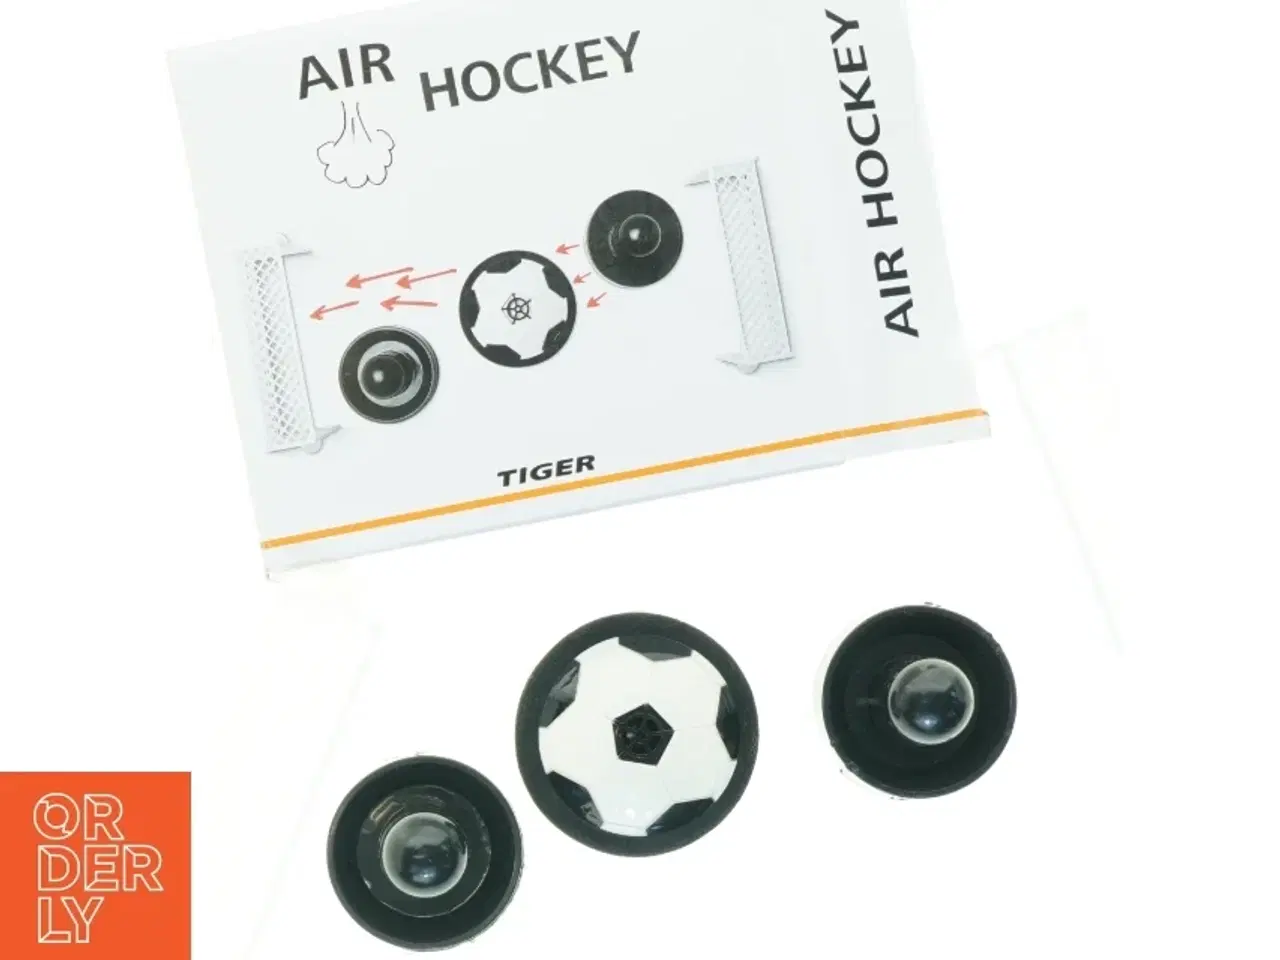 Billede 3 - Bord-Airhockey Spil fra Tiger (str. Mål 15 x 8 x 5 cm)